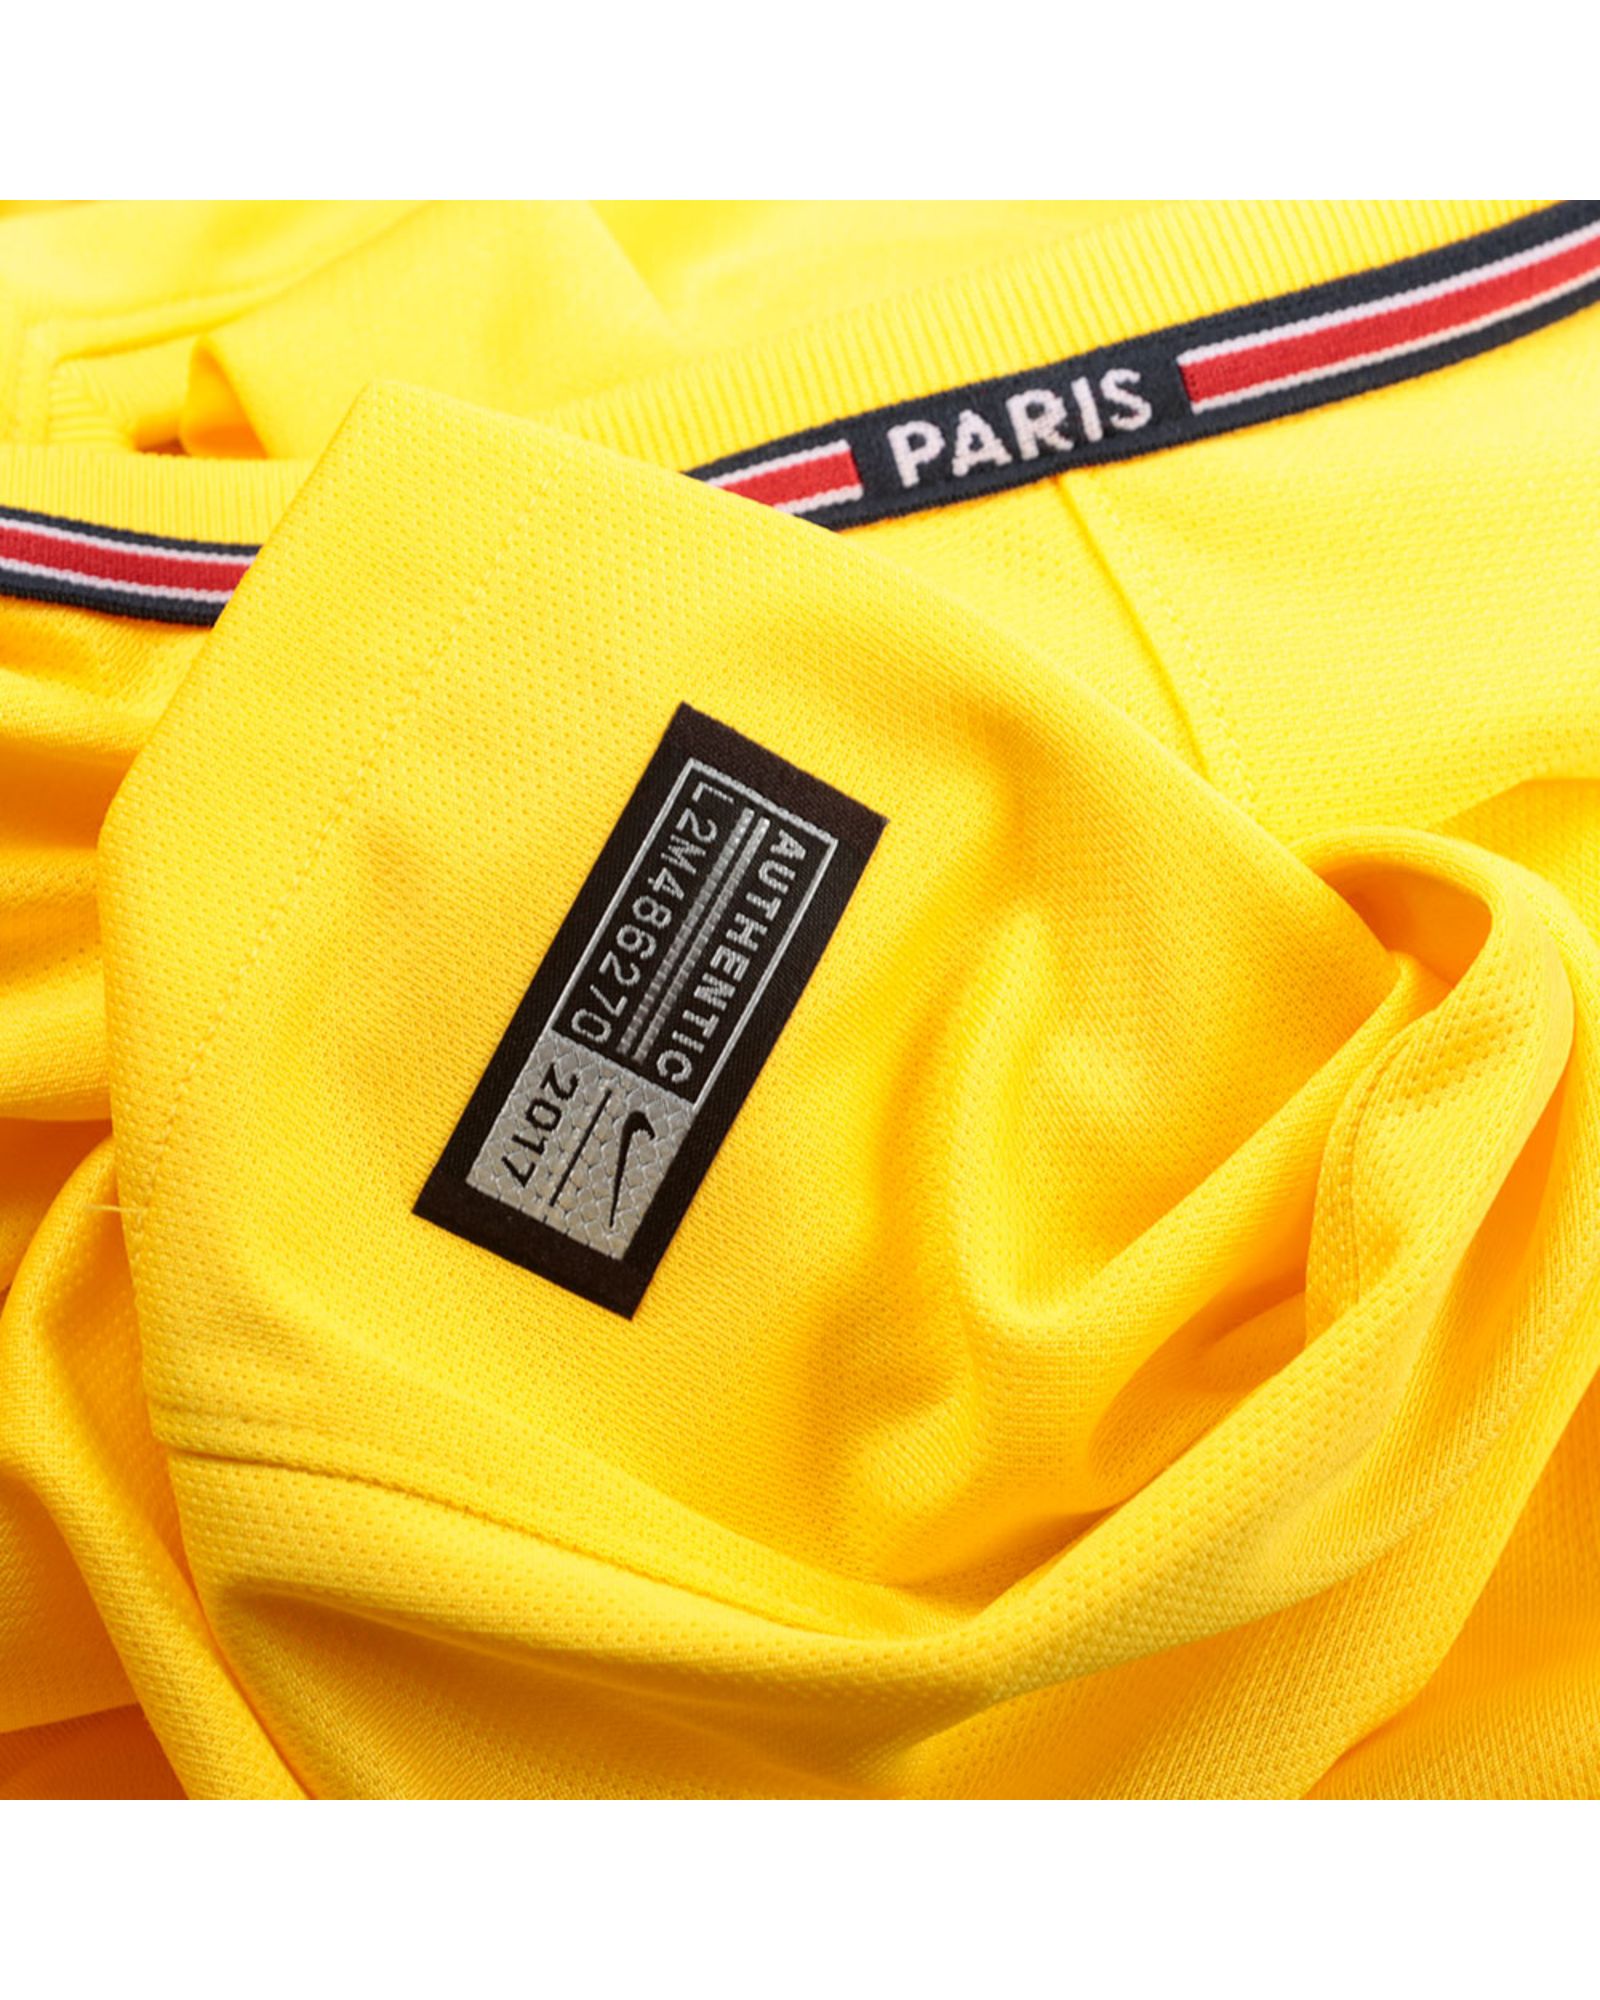 Camiseta 2ª Paris Saint-Germain 2017/2018 Stadium Amarilla - Fútbol Factory